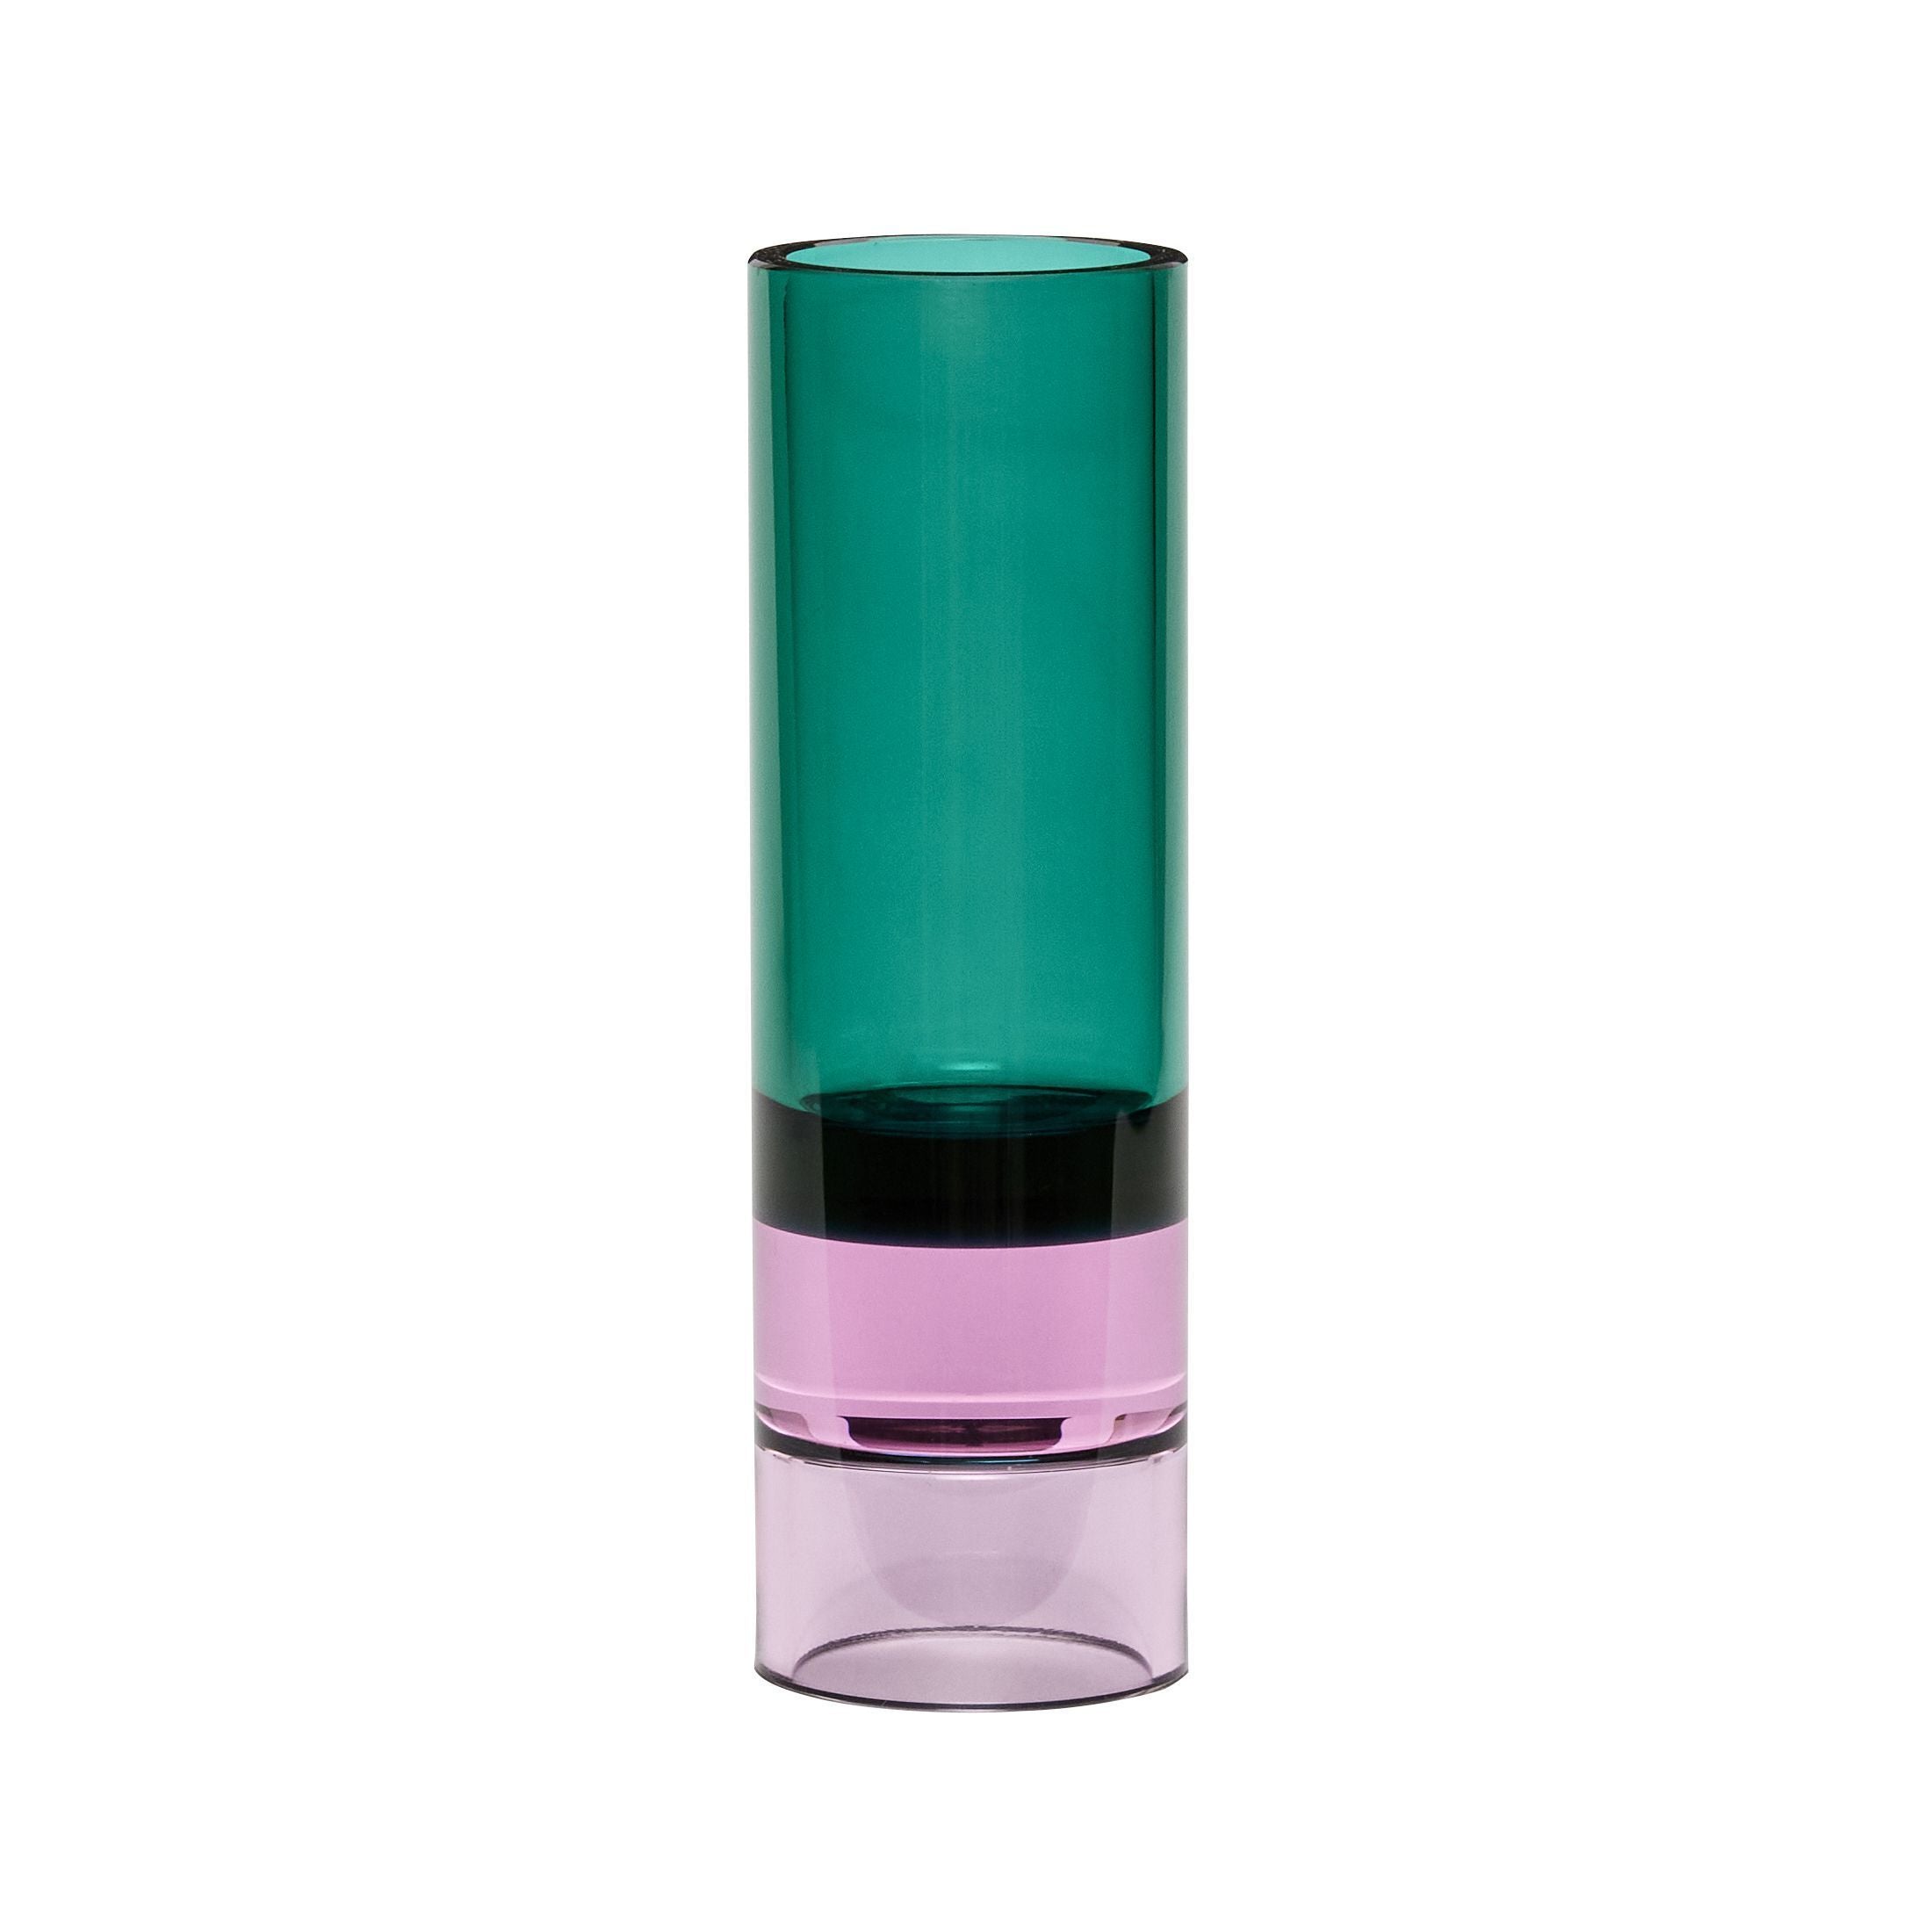 Hübsch Astro Tealight Holder Crystal, vert / rose